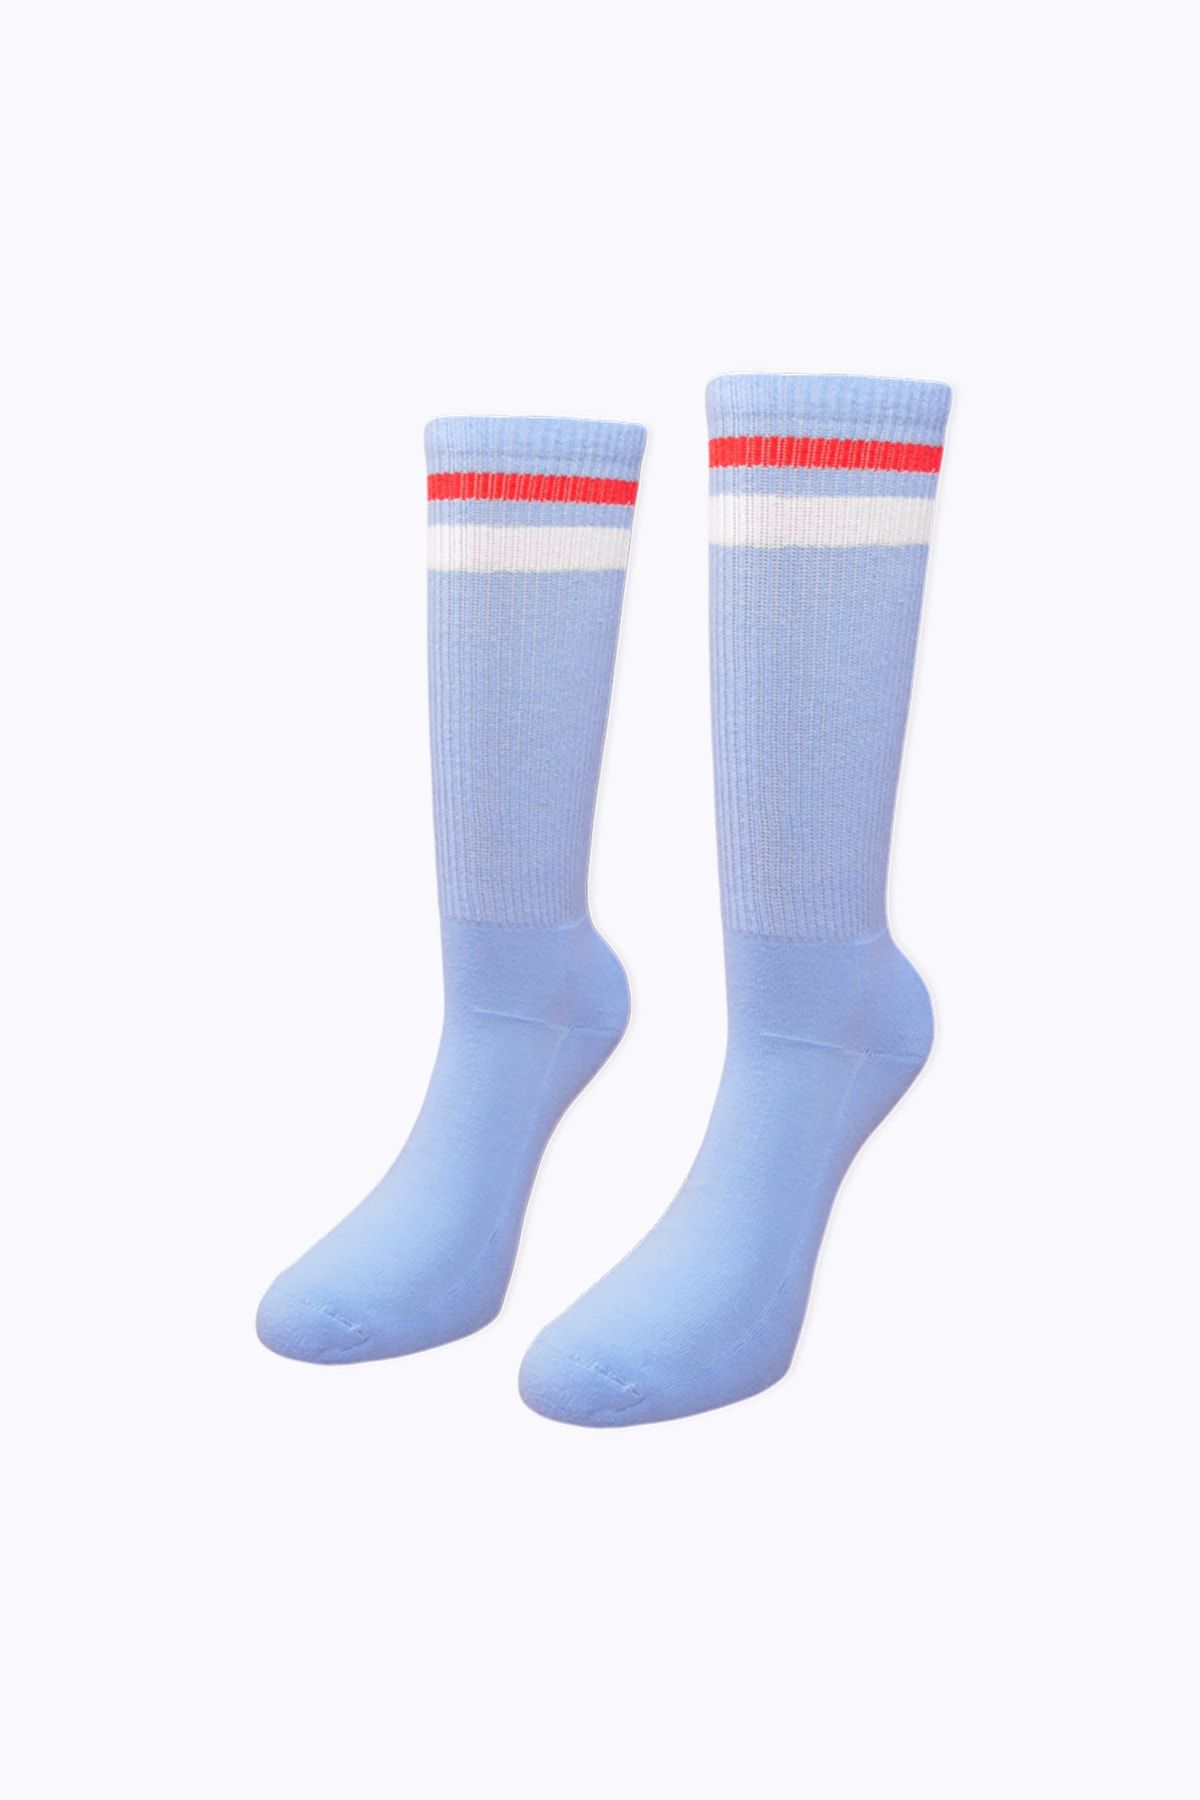 Socks Academy Kırmızı Beyaz Çizgili Havlu Tabanlı Mavi Çorap